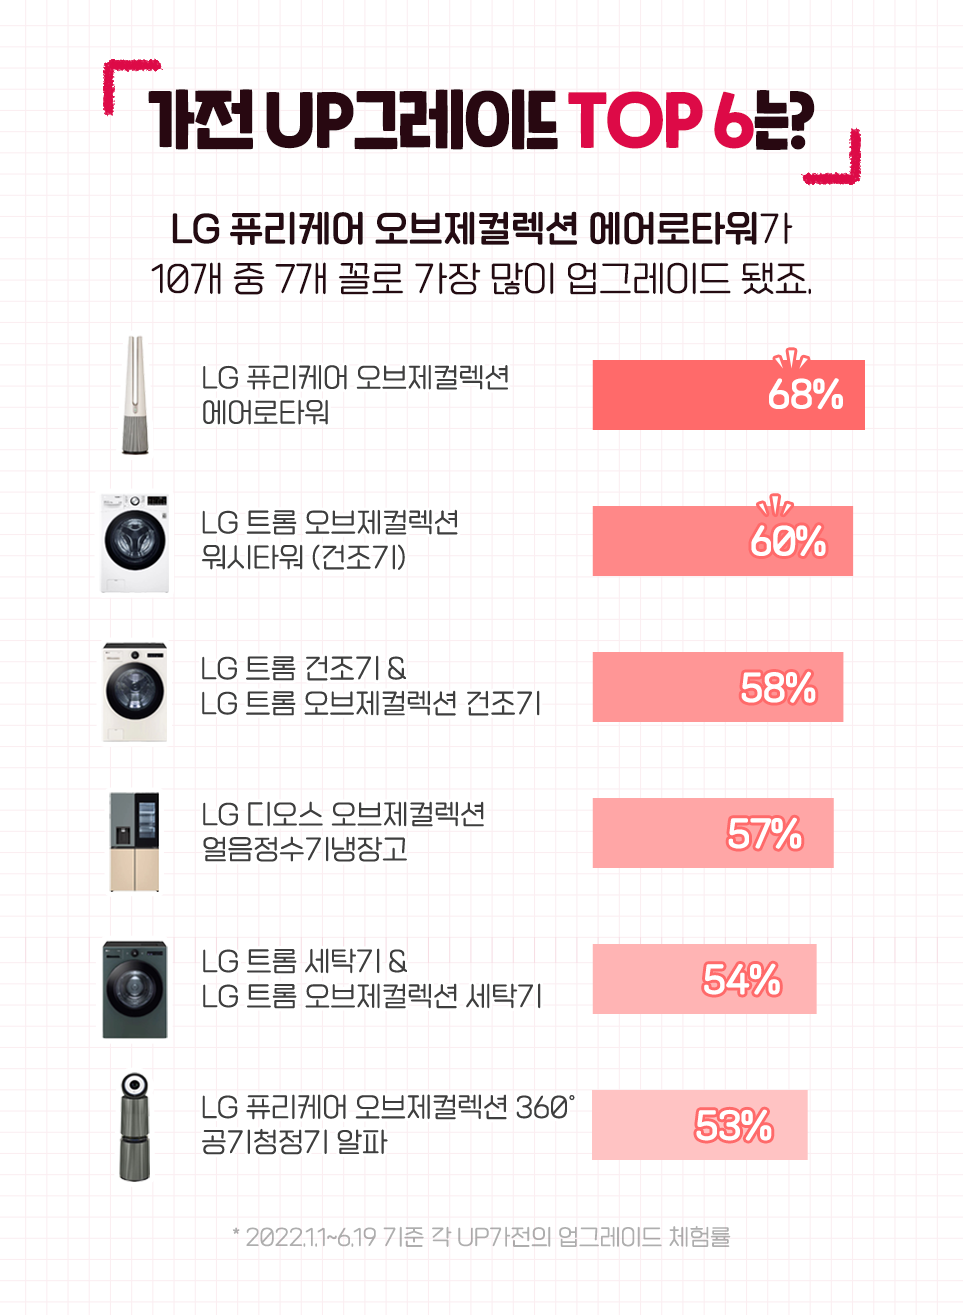 가전 UP그레이드 TOP 는? LG 퓨리케어 오브제컬렉션 에어로타워가 10개 중 7개 꼴로 가장 많이 업그레이드 됐죠. LG 퓨리케어 오브제컬렉션 에어로타워 68% LG 트롬 오브제컬렉션 60% 워시타워 (건조기) LG 트롬 건조기 & 58% LG 트롬 오브제컬렉션 건조기 LG 디오스 오브제컬렉션 57% 얼음정수기냉장고 LG 트롬 세탁기& 54% LG 트롬 오브제컬렉션 세탁기 LG 퓨리케어 오브제컬렉션 360° 53% 공기청정기 알파 * 2022.1.1~6.19 기준 각 UP가전이 업그레이드 체험률